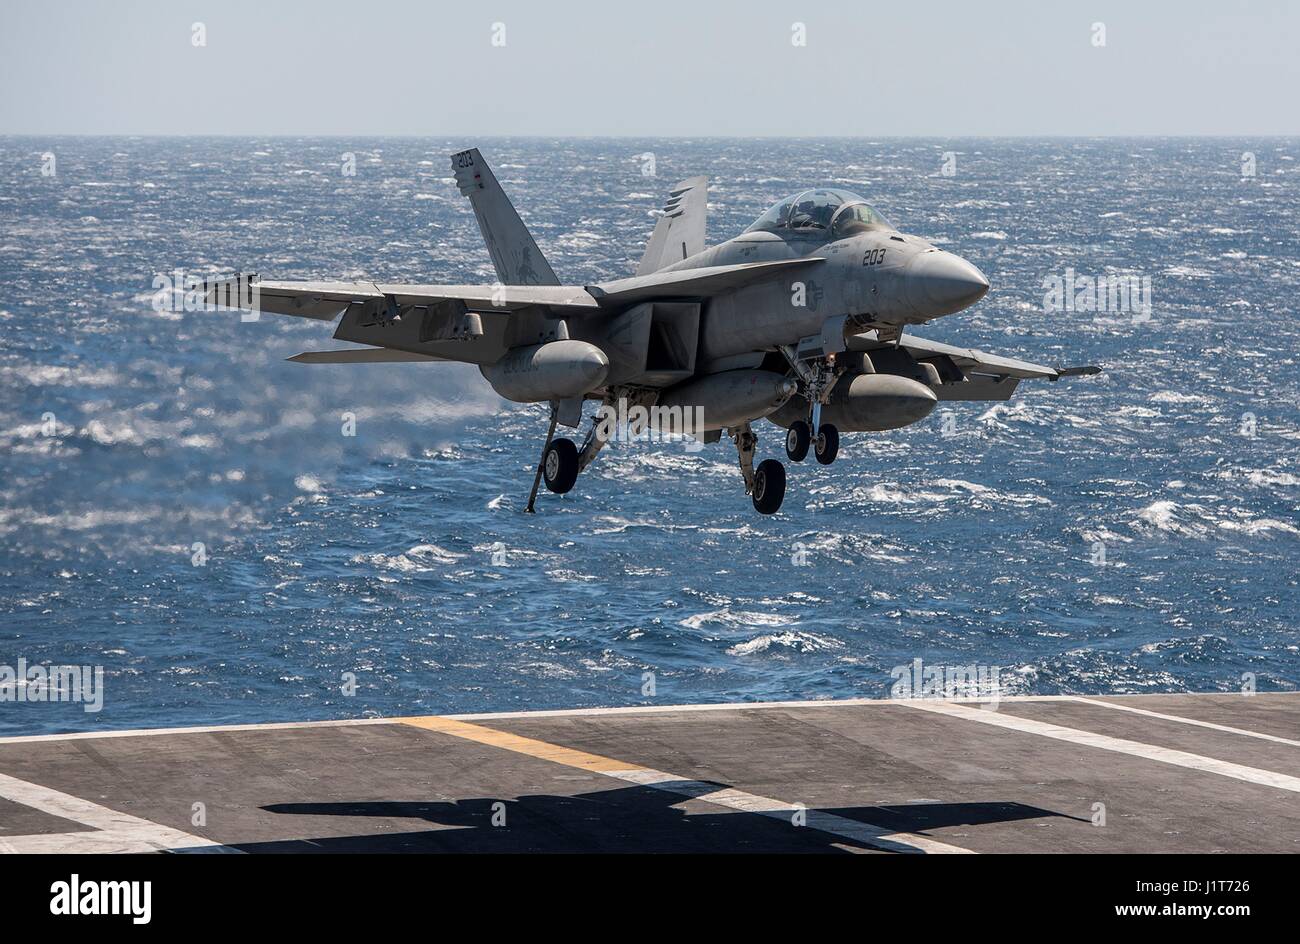 Un U.S. Navy F/A-18F Super Hornet fighter aircraft approcci per terra sul ponte di volo dell'Nimitz-class portaerei USS George H.W. Bush durante le operazioni contro lo Stato islamico nel funzionamento inerenti risolvere Aprile 4, 2017 nel Golfo Arabico. Foto Stock